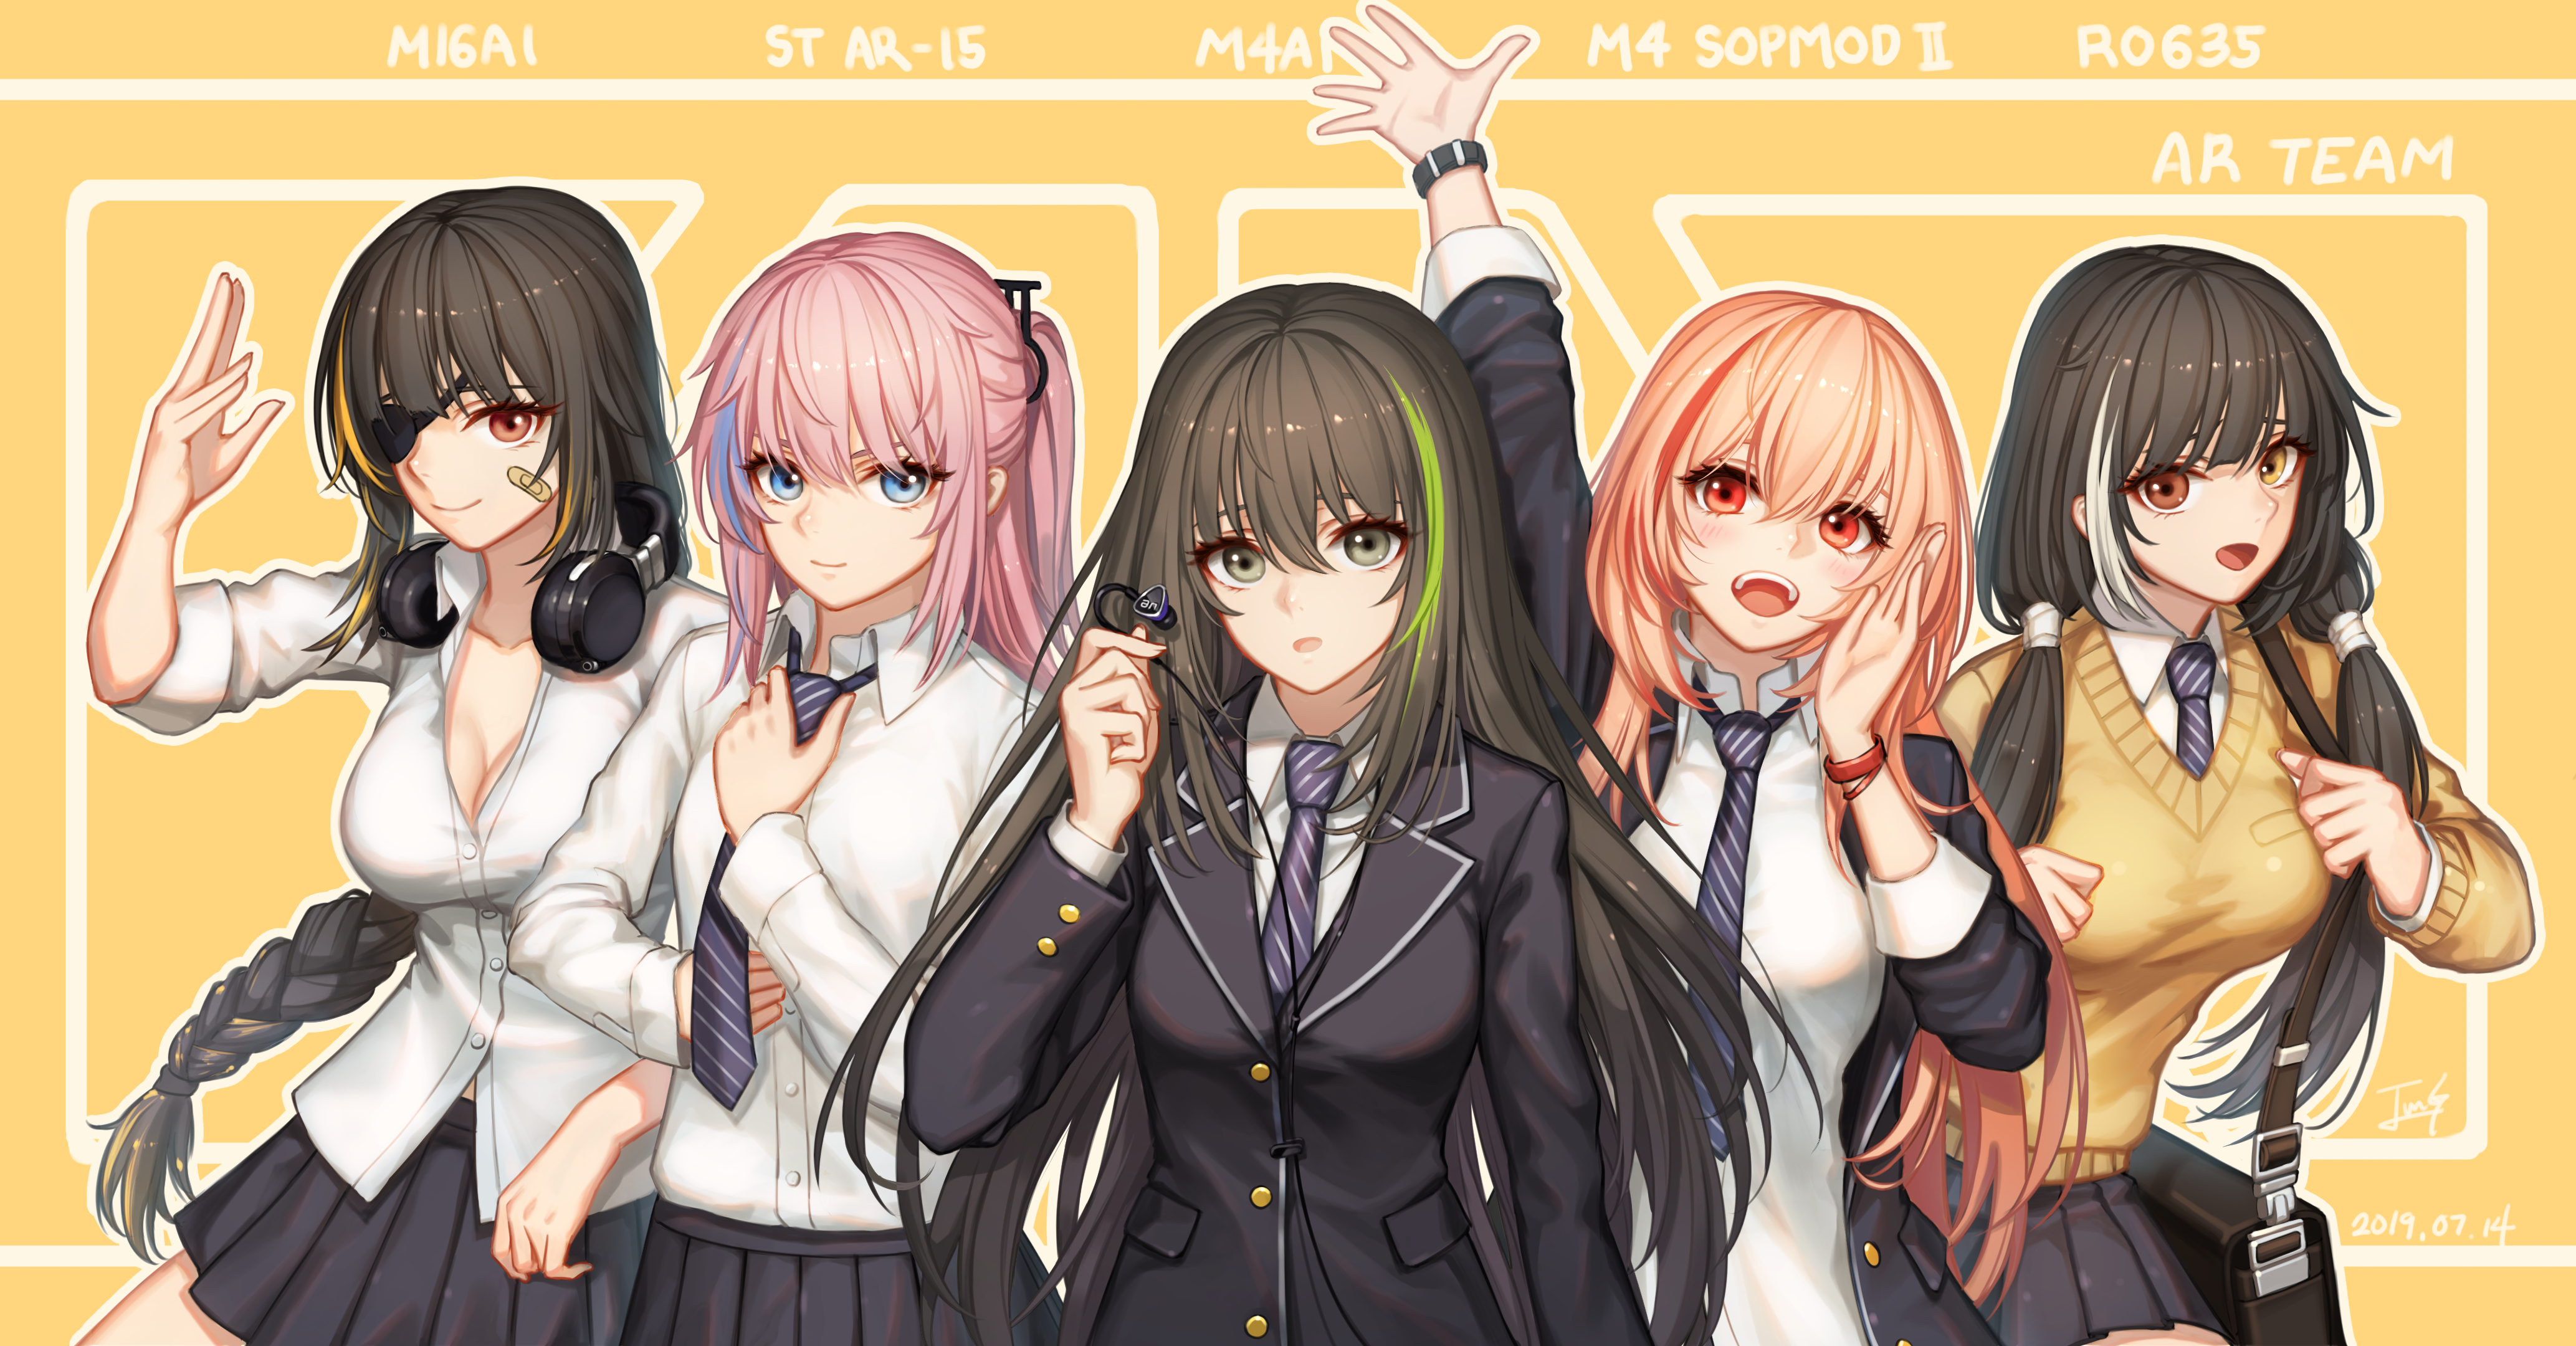 Anime Anime Girls Girls Frontline School Uniform ST AR 15 Girls Frontline RO635 Girls Frontline M4A1 4134x2160